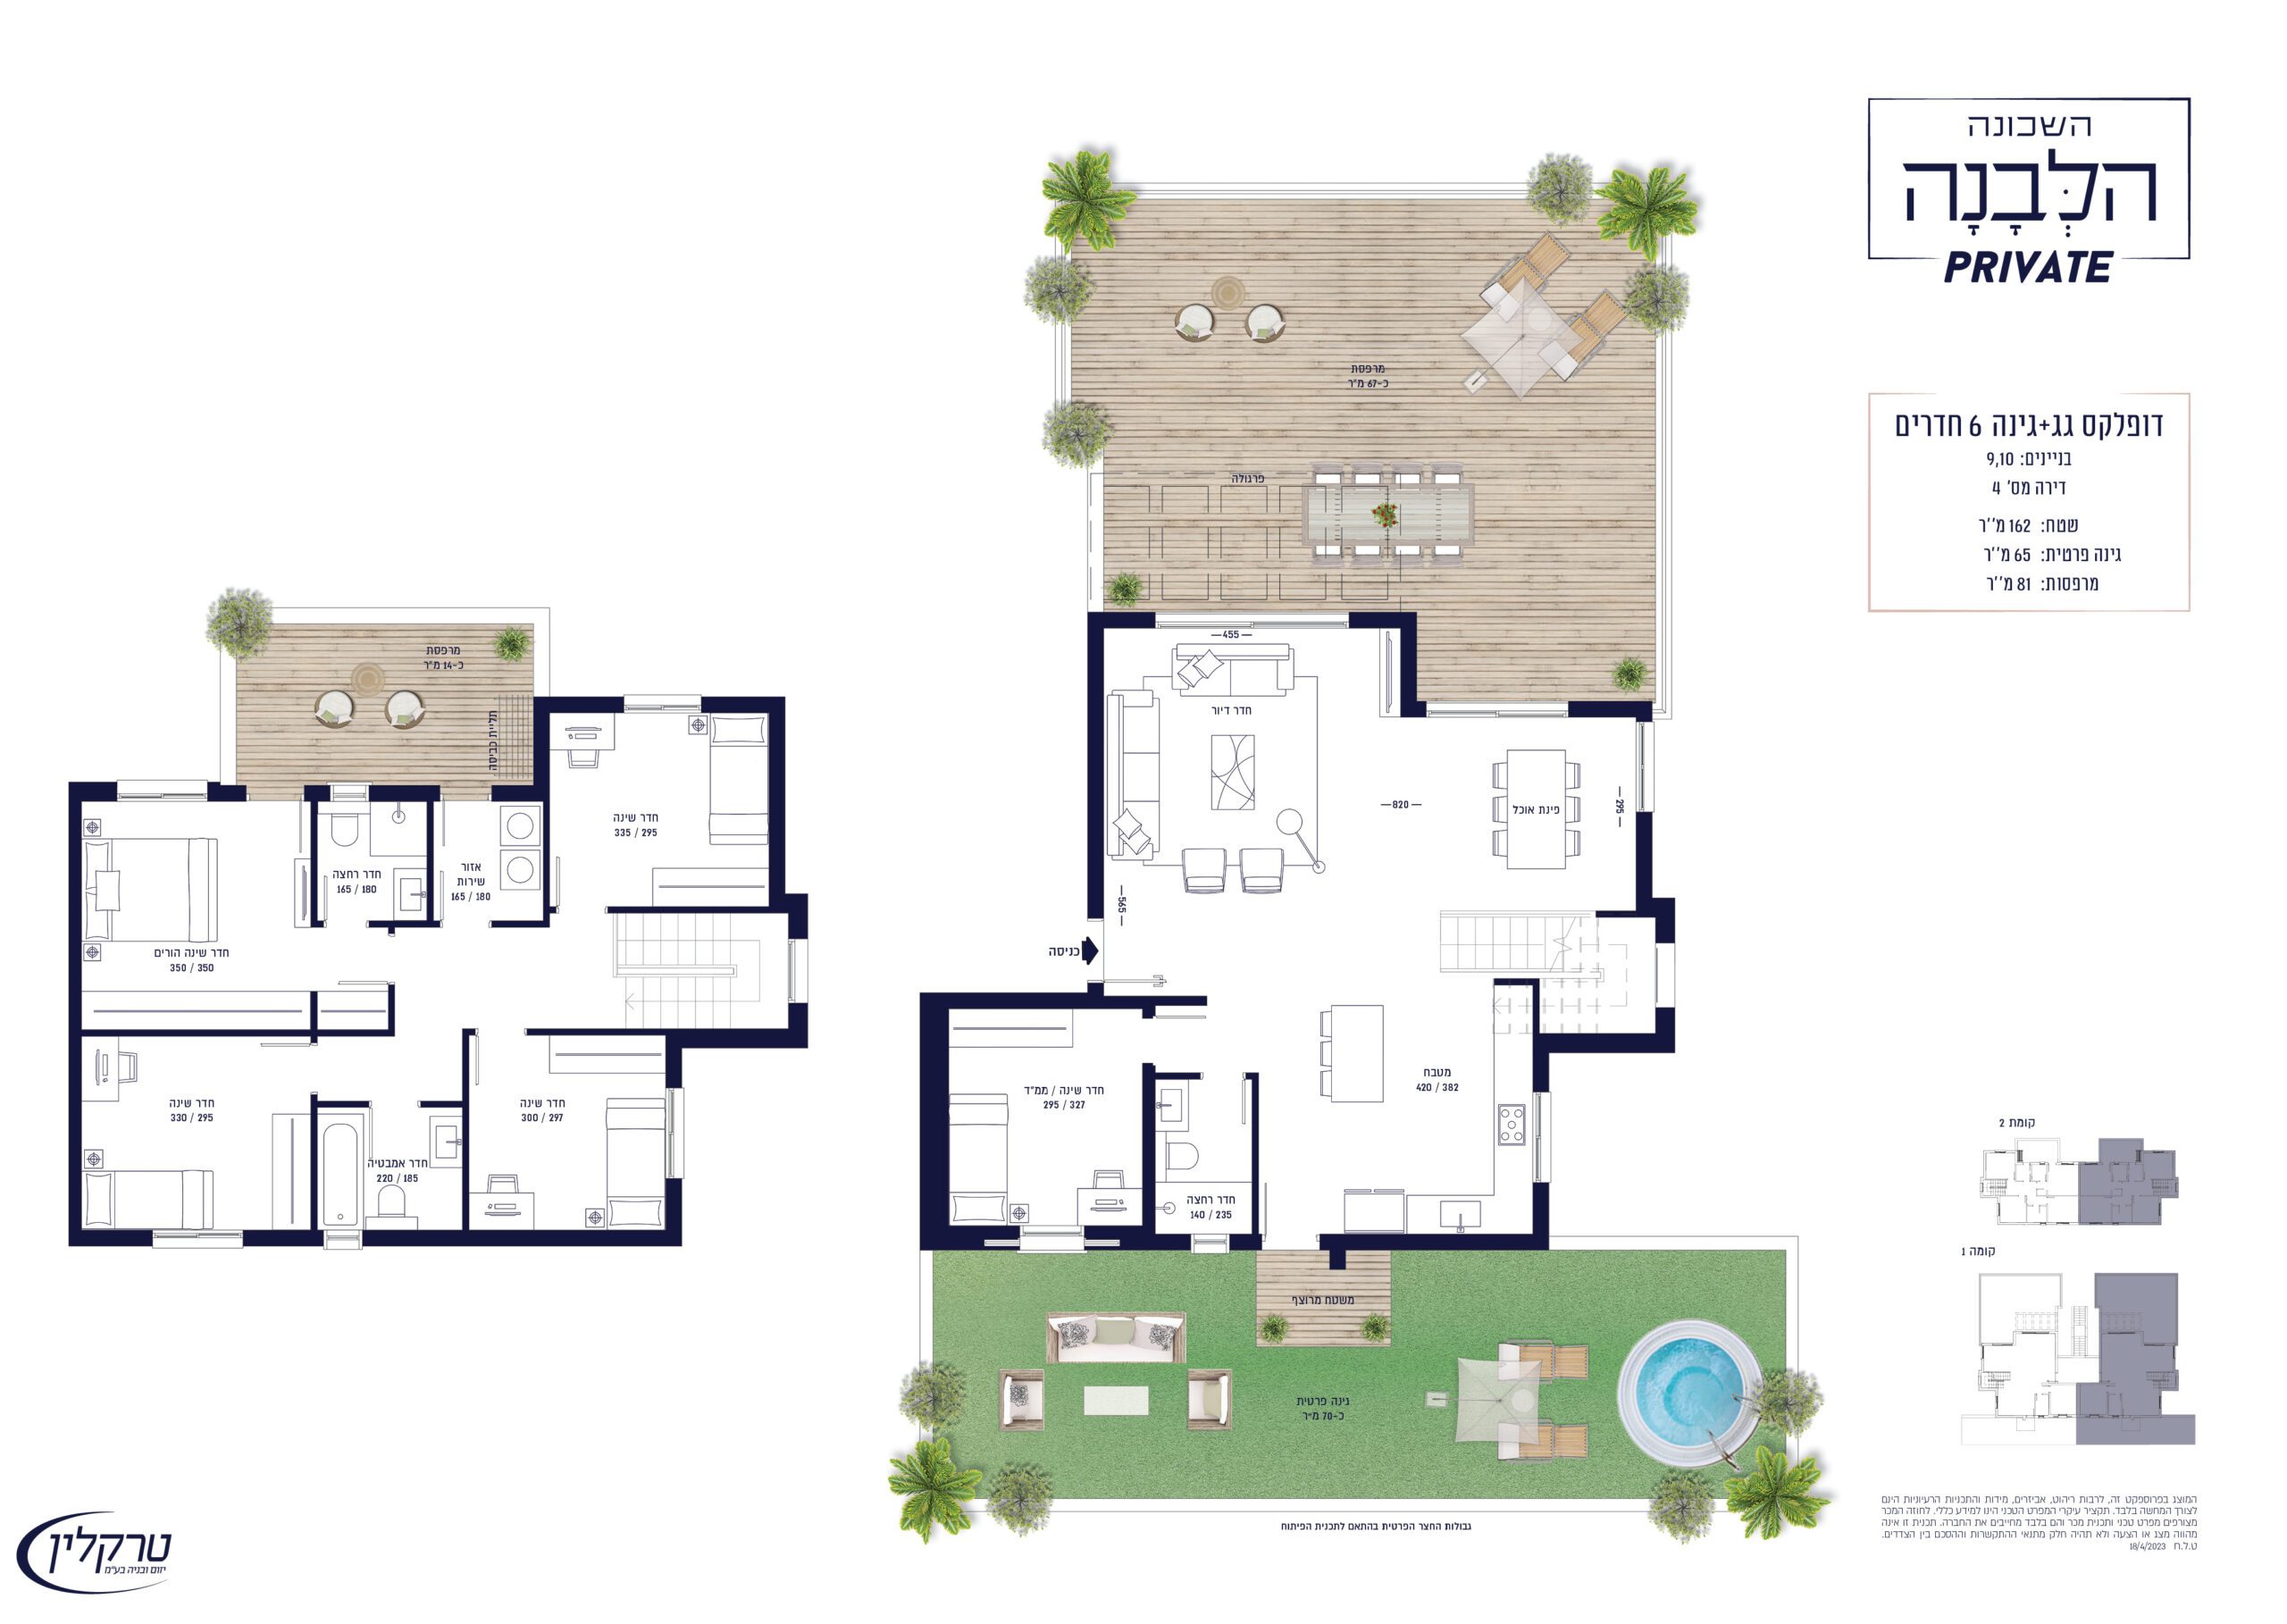 דופלקס גג + גינה 6 חדרים - בניינים 9.10 דירה מס' 4